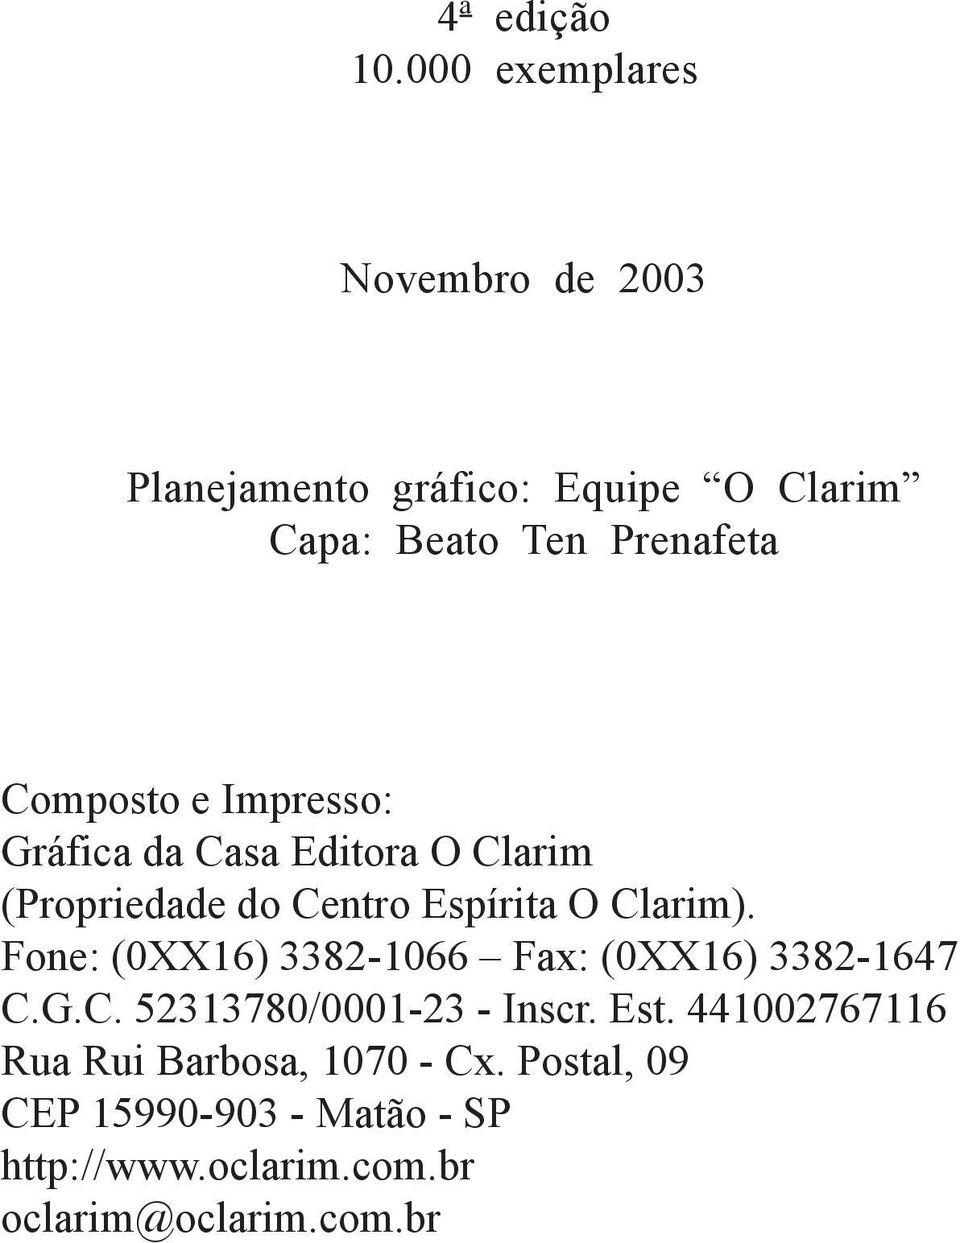 e Impresso: Gráfica da Casa Editora O Clarim (Propriedade do Centro Espírita O Clarim).